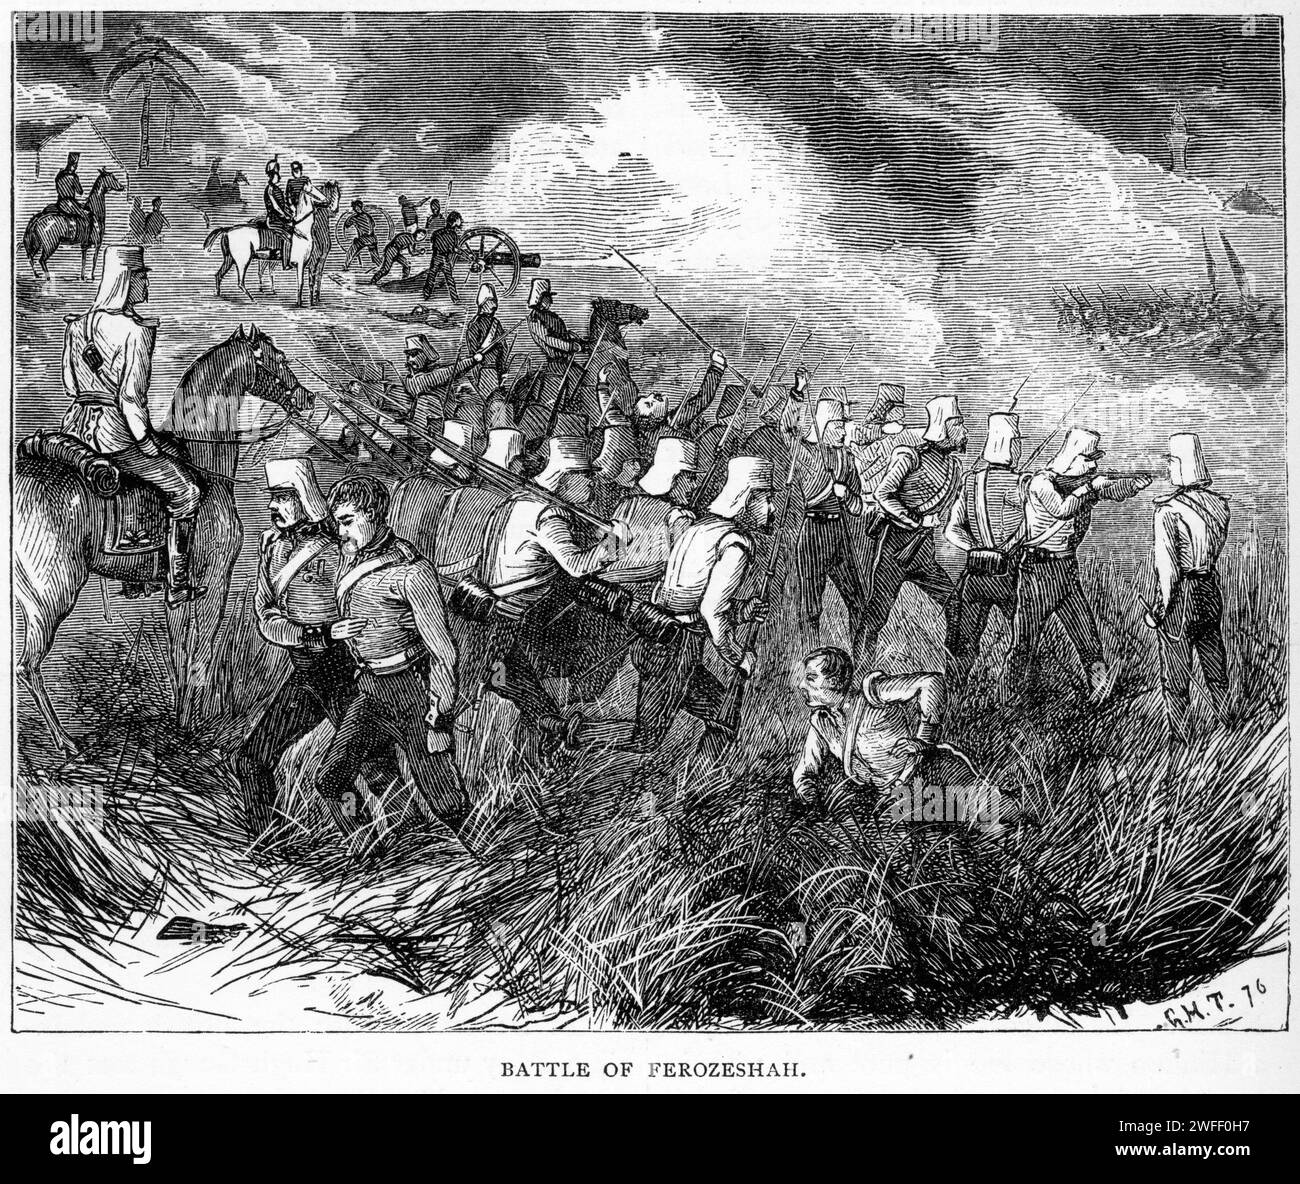 Soldats engagés dans la bataille de Ferozeshah, combattus les 21 et 22 décembre 1845 entre la Compagnie britannique des Indes orientales et l'Empire sikh, dans le village de Ferozeshah au Pendjab. Les Britanniques étaient dirigés par Sir Hugh Gough et le gouverneur général Sir Henry Hardinge, tandis que les Sikhs étaient dirigés par Lal Singh. Les Britanniques sont sortis victorieux. Banque D'Images